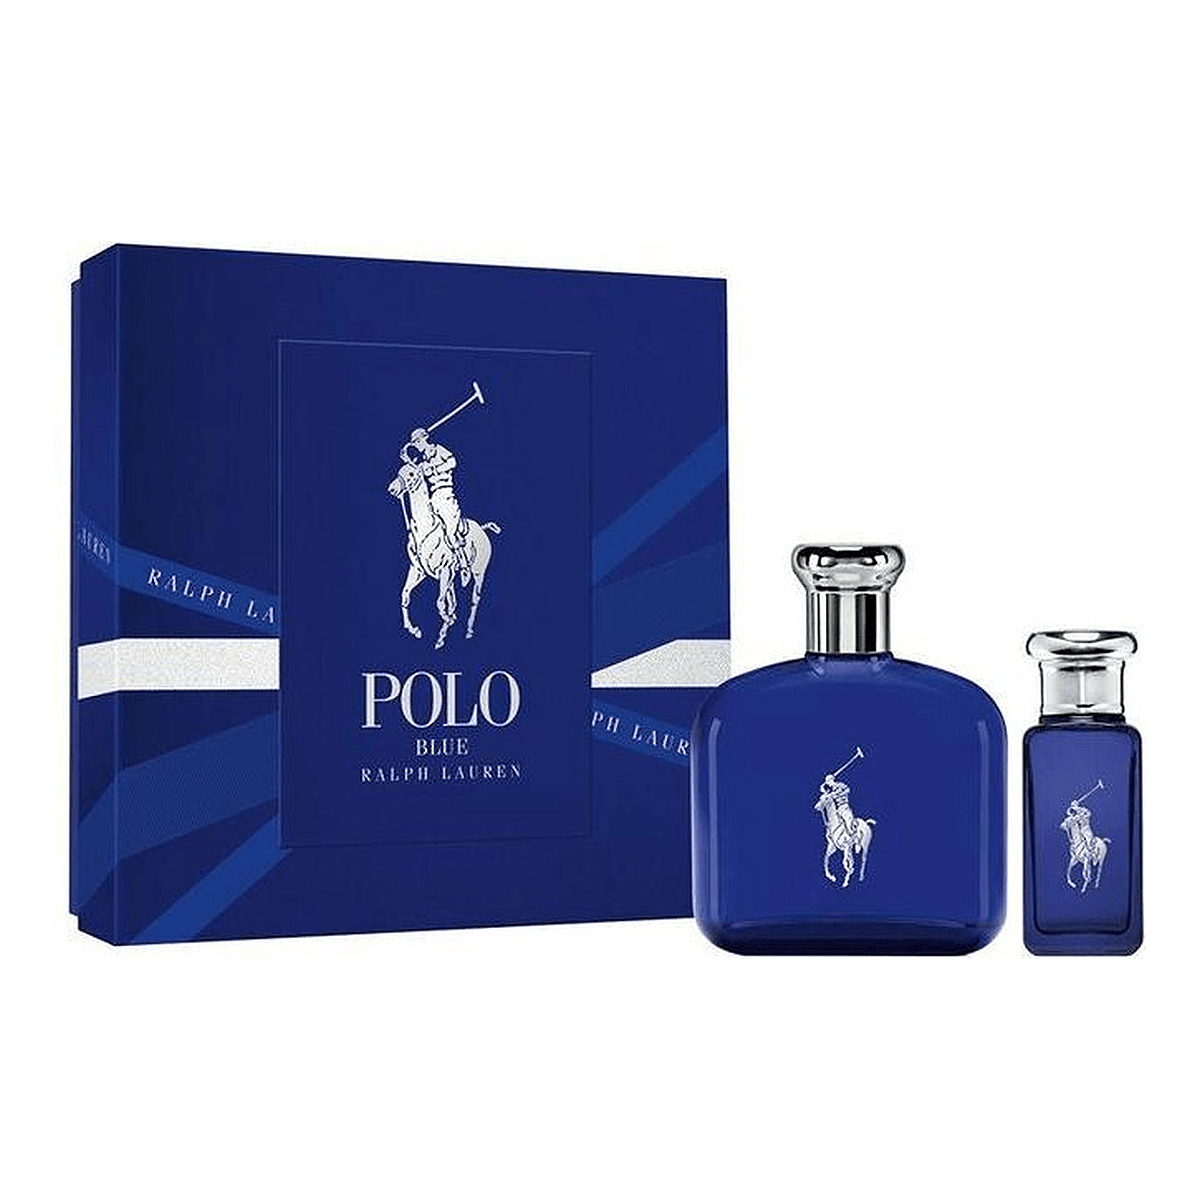 Ralph Lauren Polo Blue EDT For Men Set | My Perfume Shop Australia